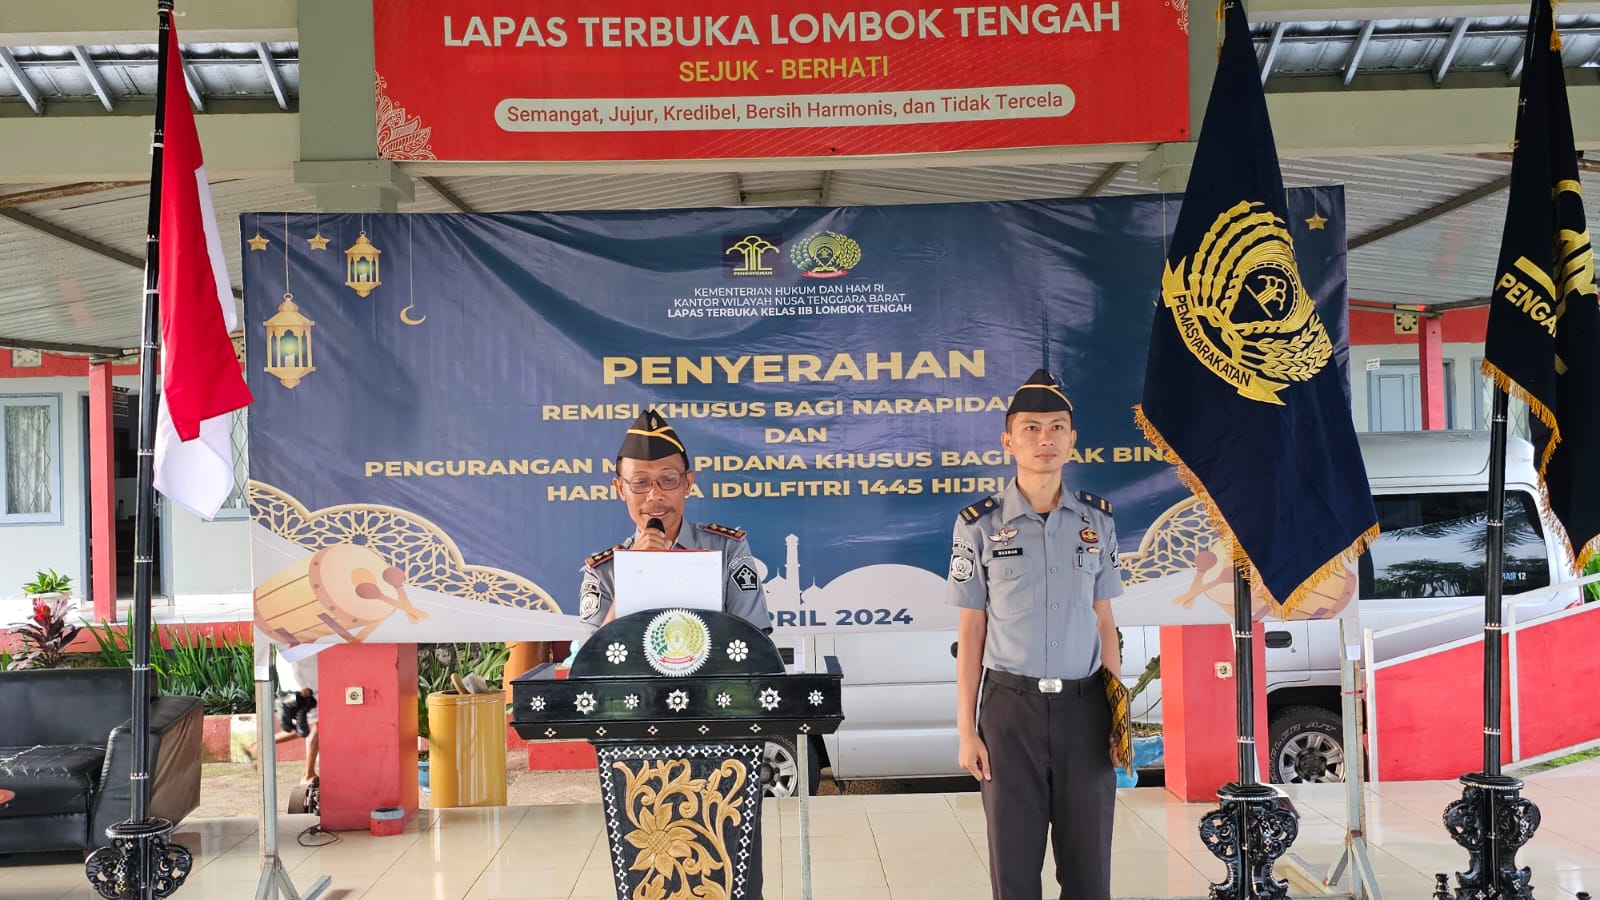 Lapas Terbuka Lombok Tengah Serahkan Remisi Idul Fitri Kepada 9 Orang Narapidana